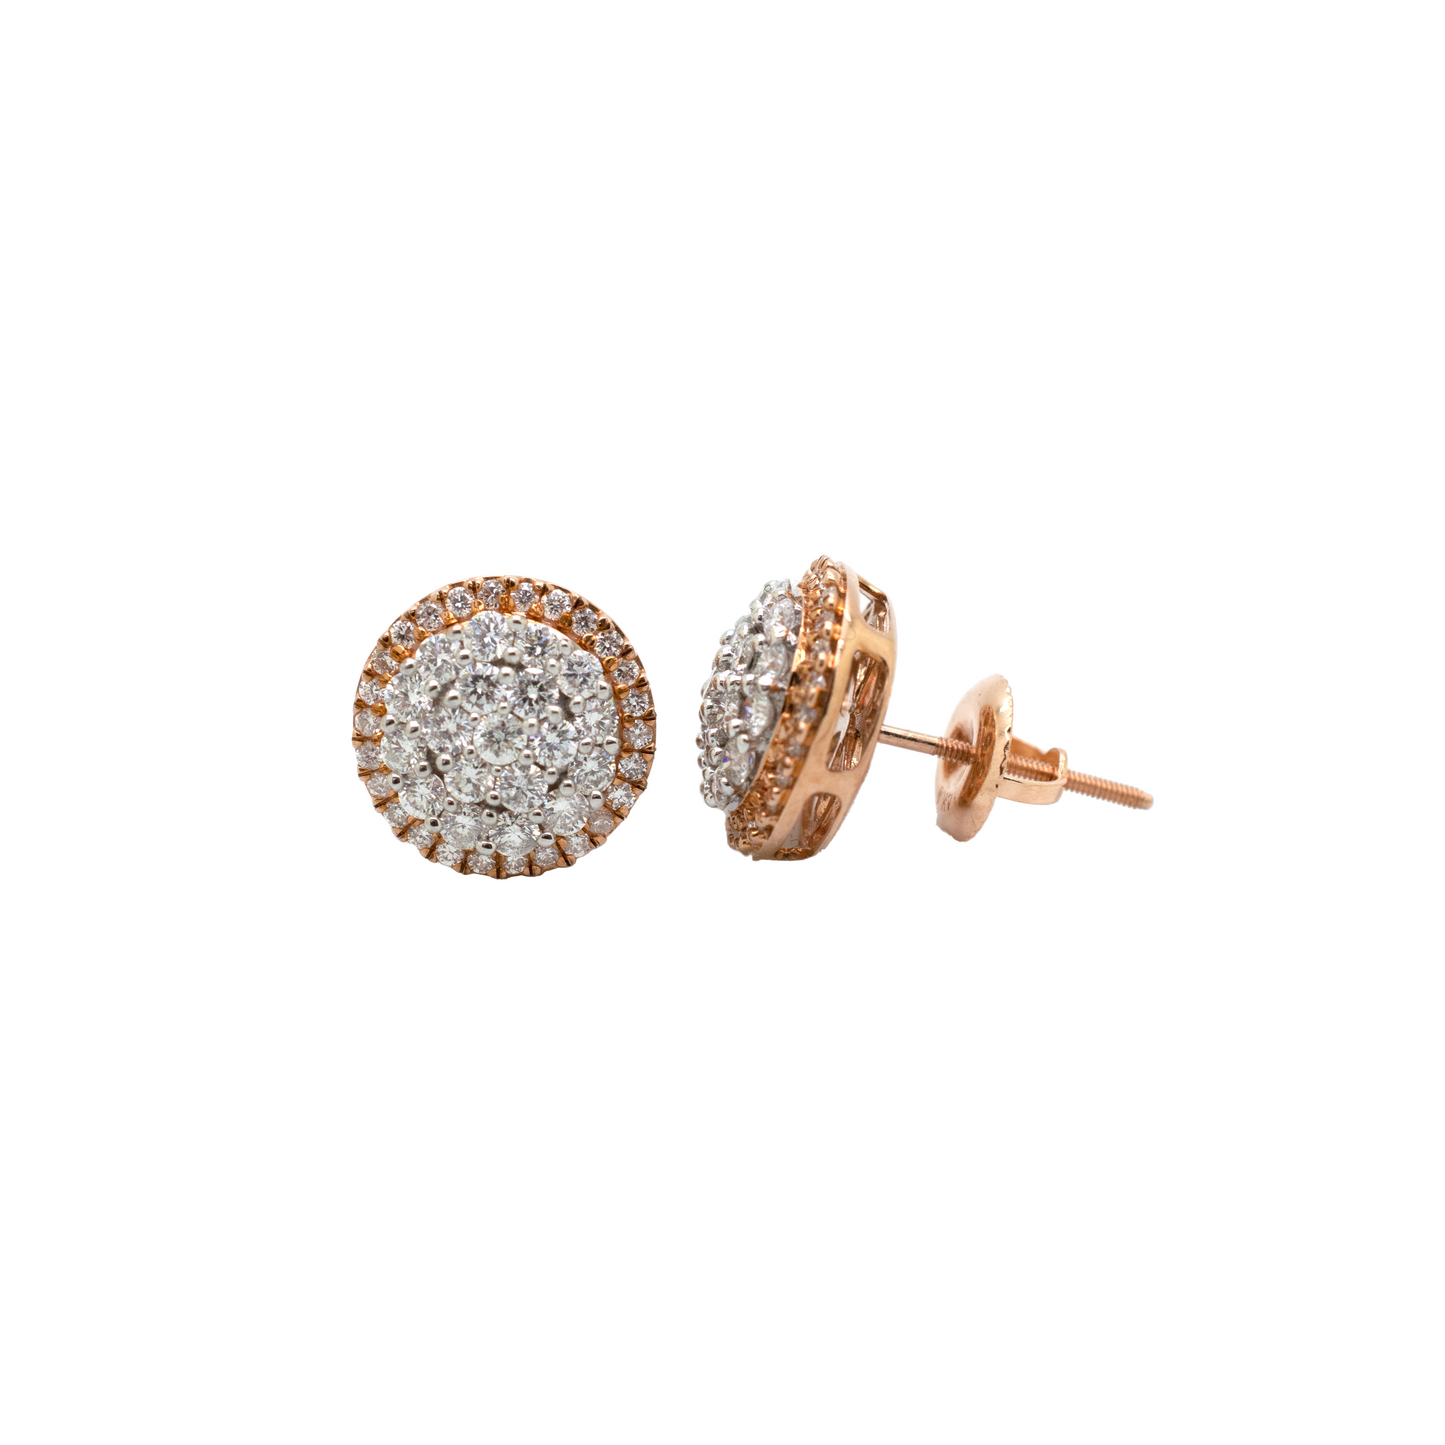 10k Rose Gold Diamond Halo Cluster Earrings 1.98ct